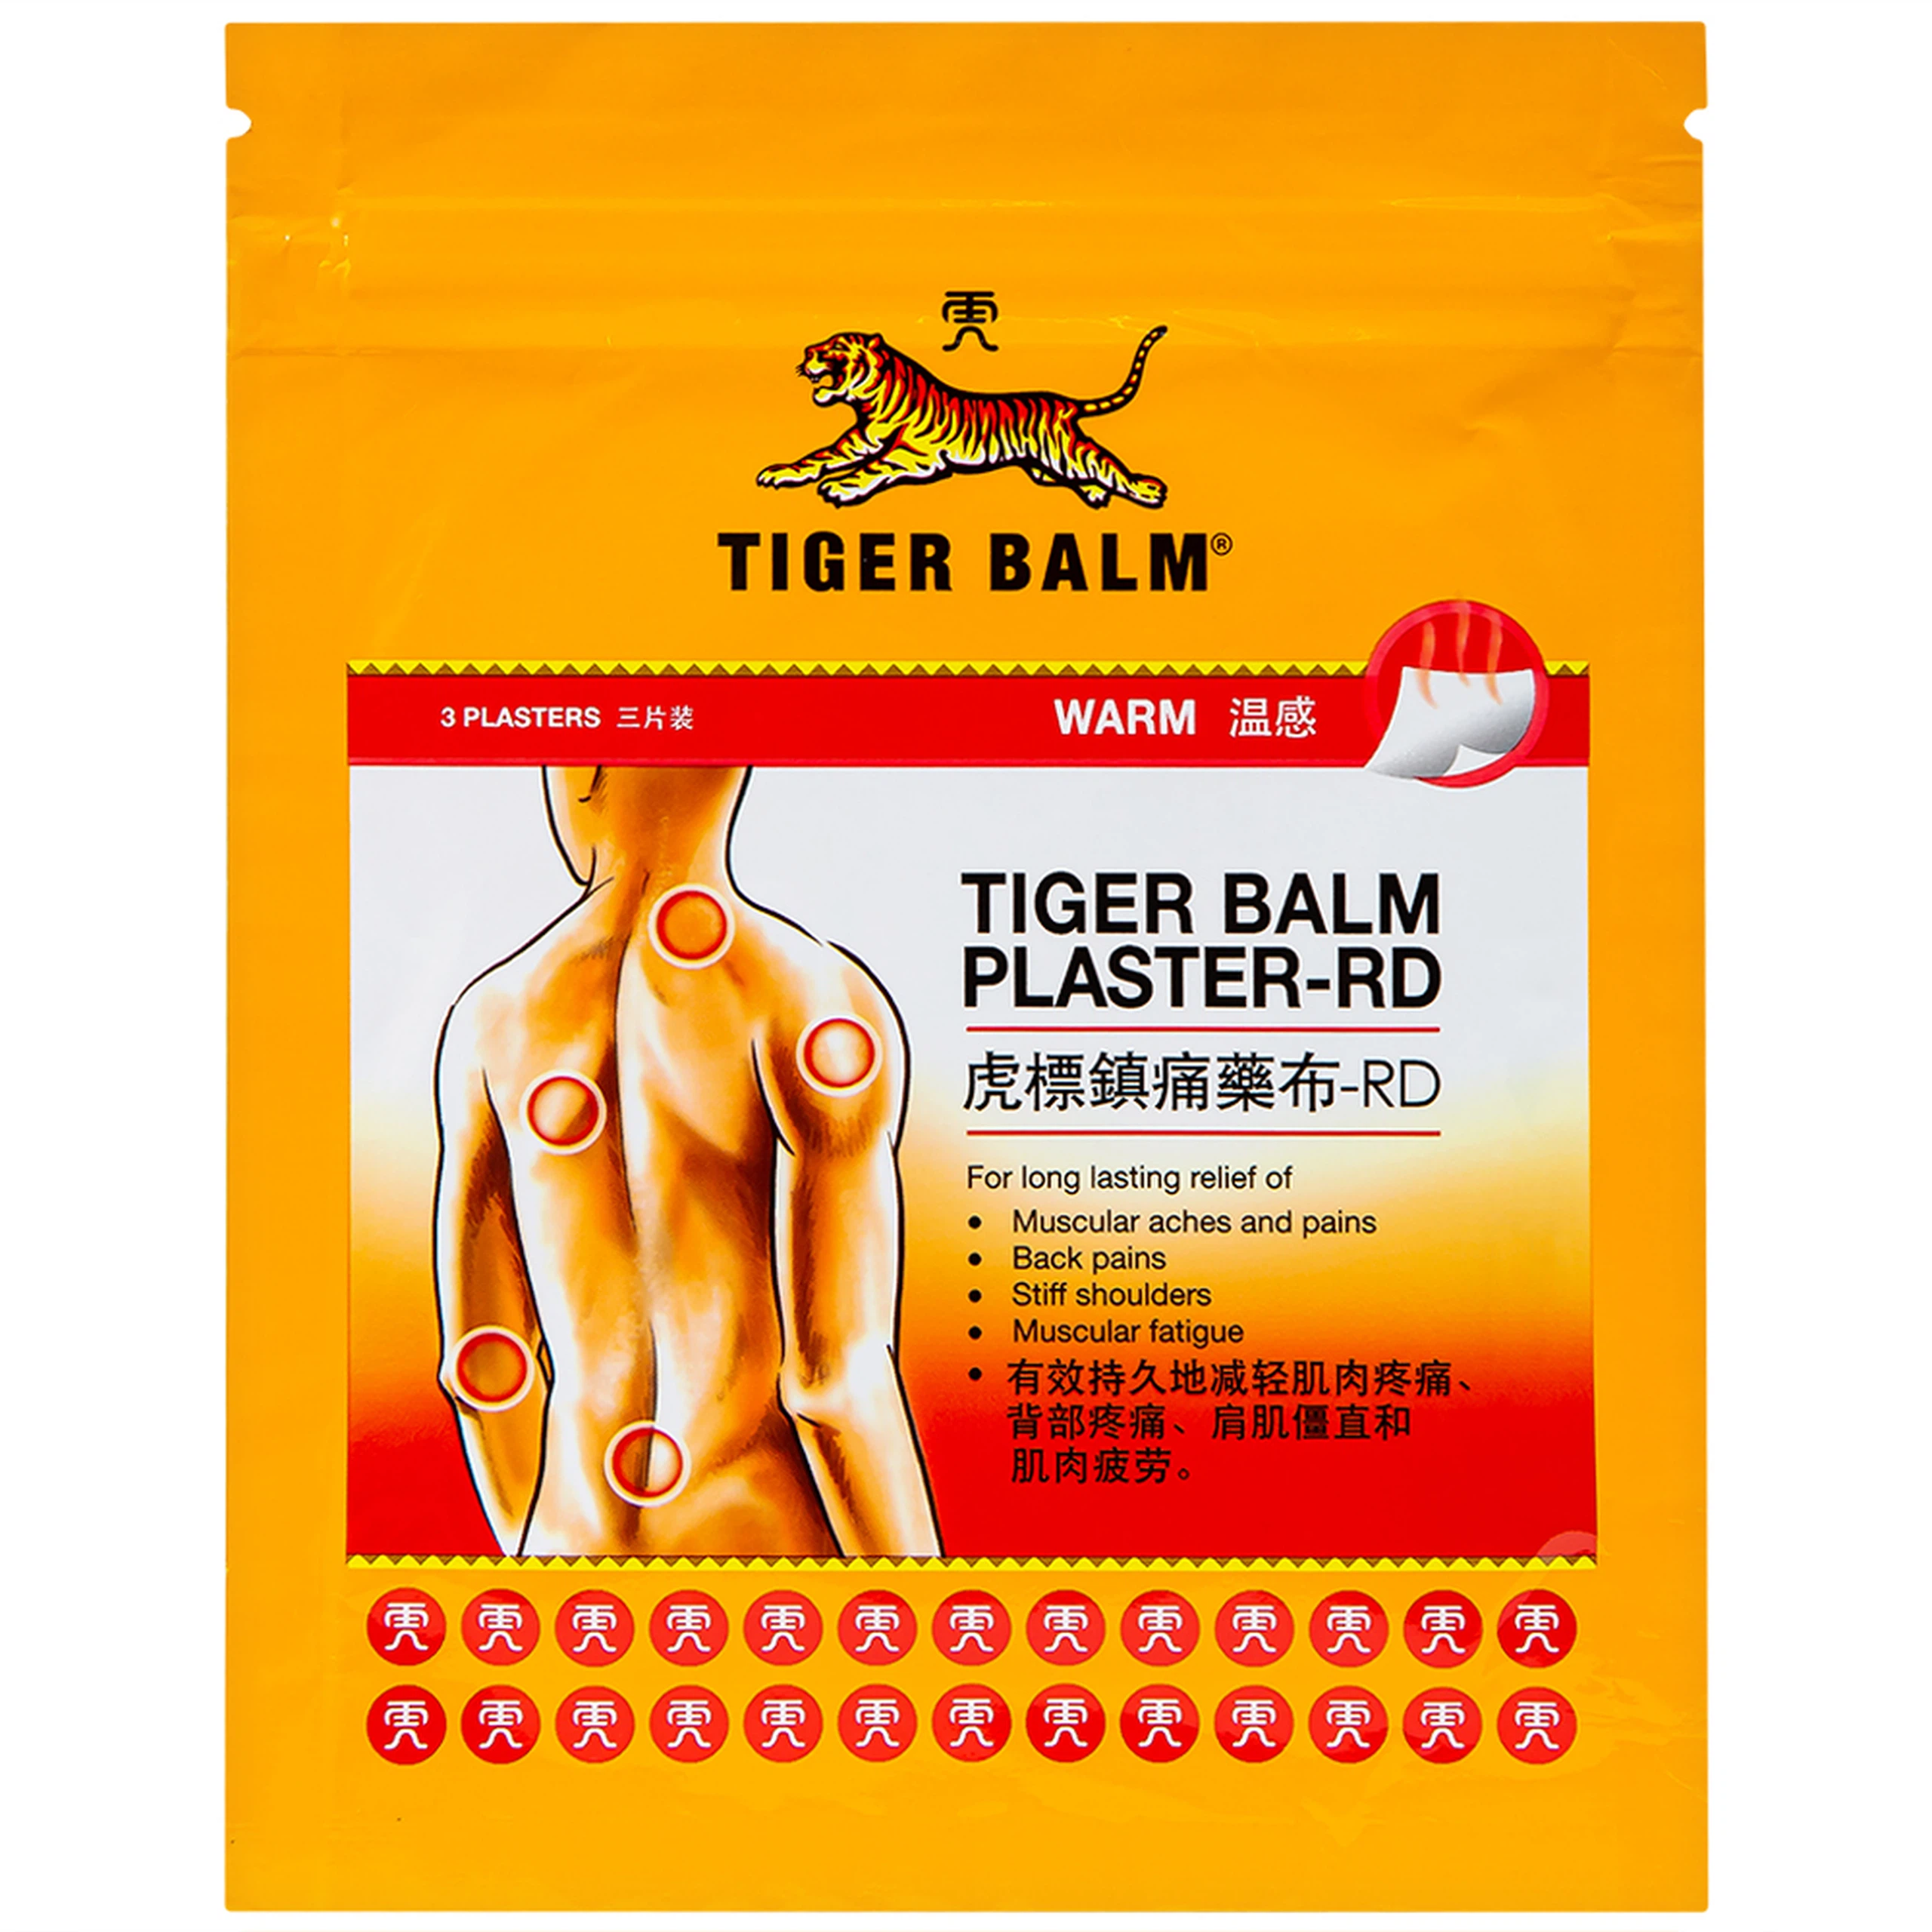 Miếng dán Tiger Balm Plaster - RD Haw Par giảm mỏi cơ, đau và nhức cơ (7cm x 10cm)